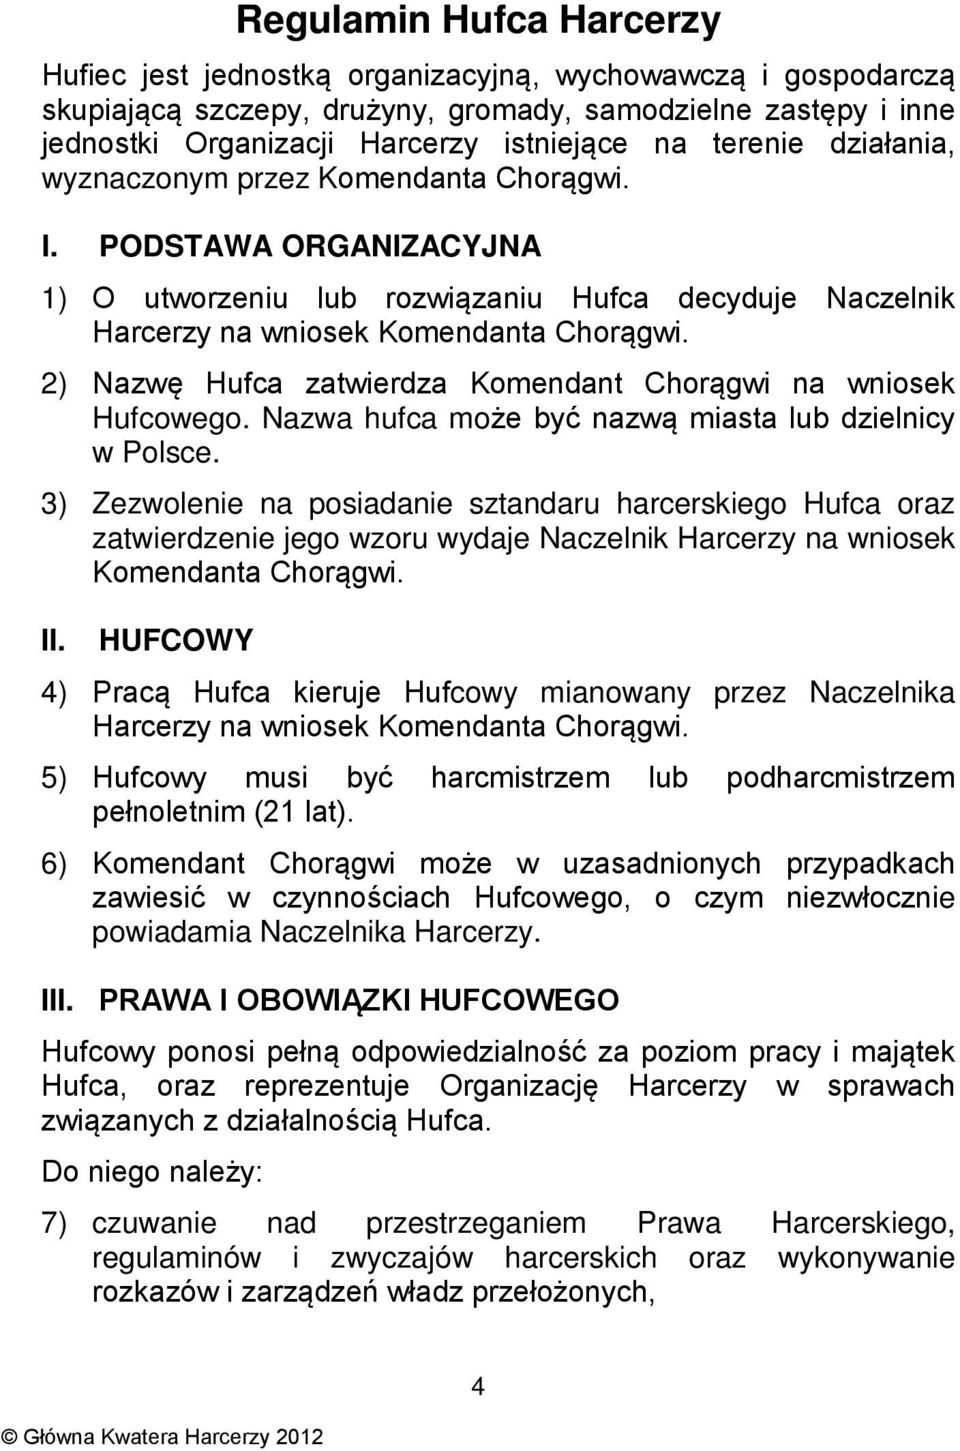 2) Nazwę Hufca zatwierdza Komendant Chorągwi na wniosek Hufcowego. Nazwa hufca może być nazwą miasta lub dzielnicy w Polsce.